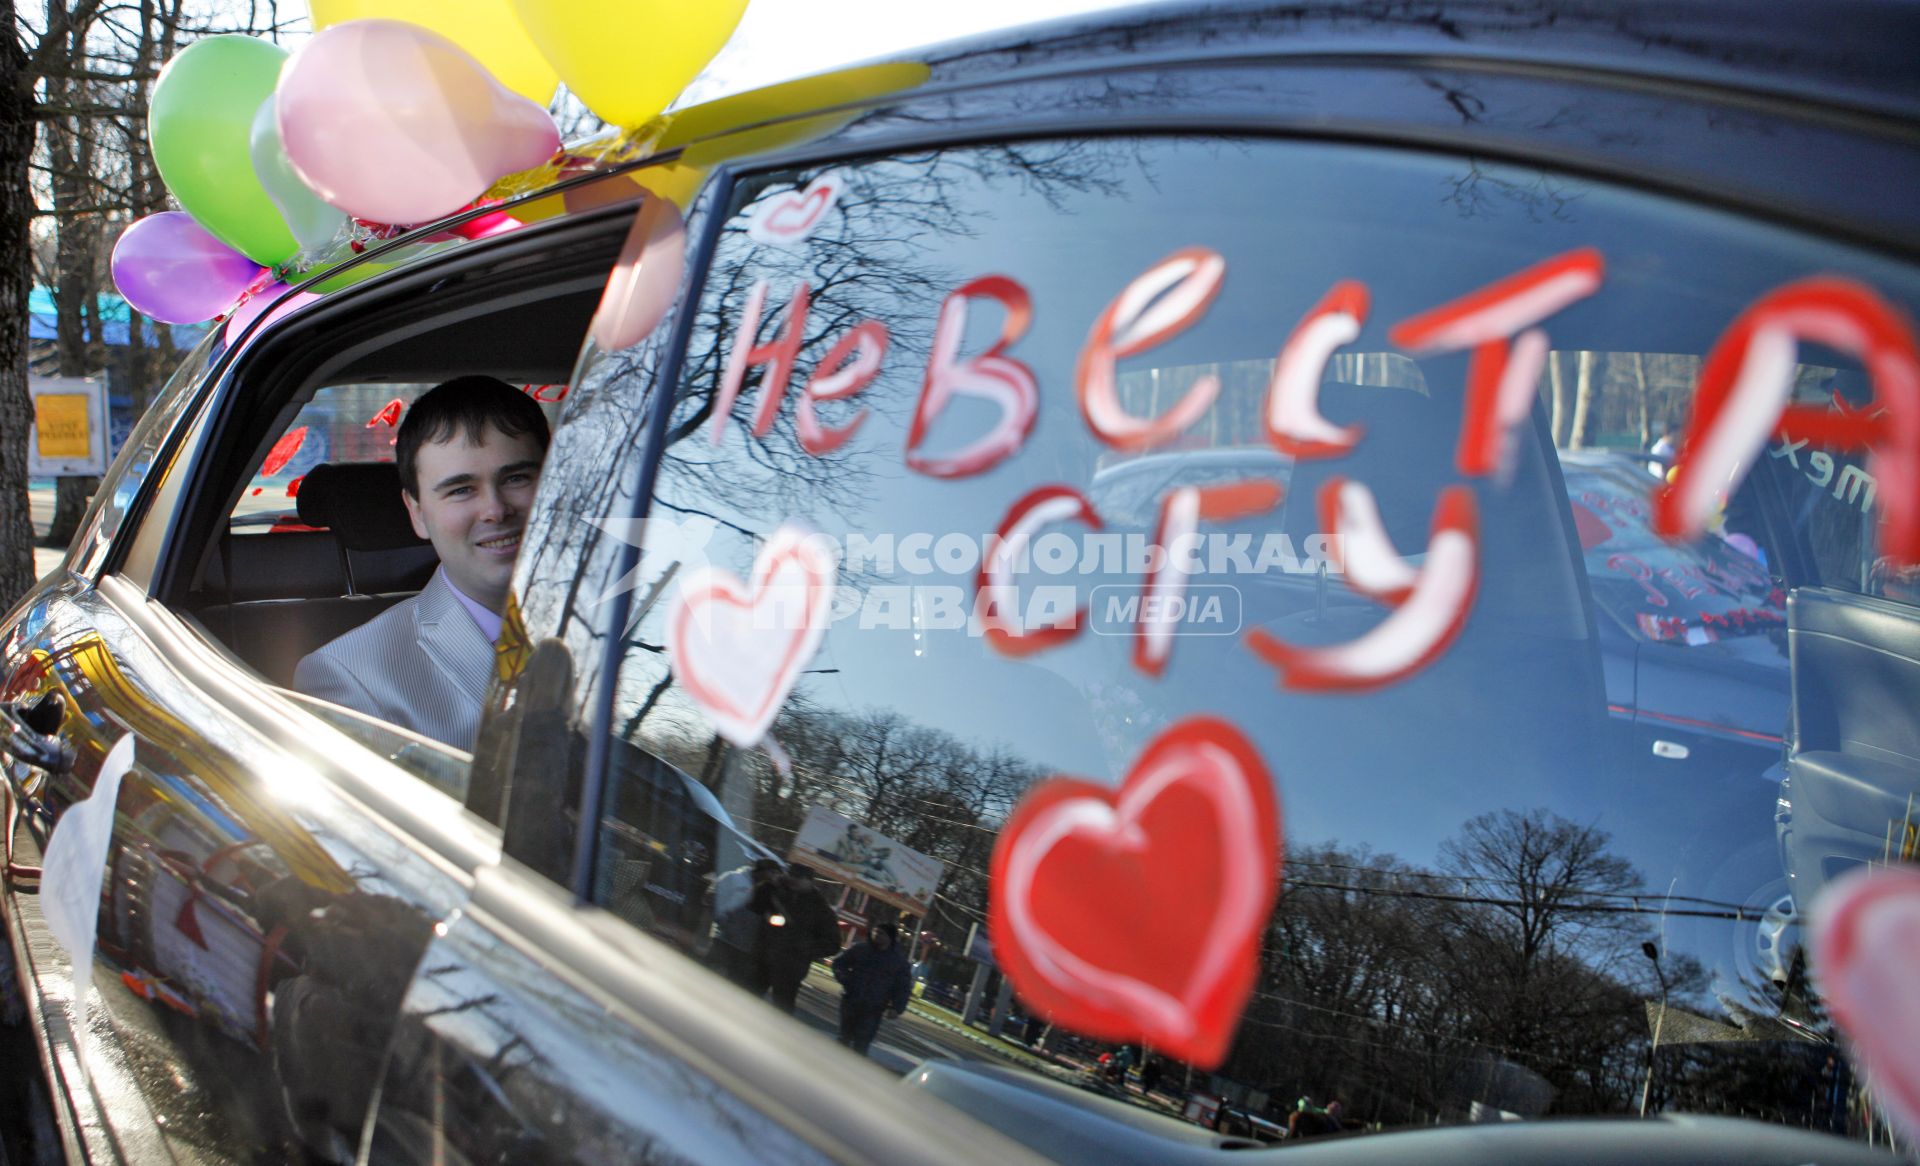 Татьянин день ставропольские студенты отметили арт выставкой собственных автомобилей. На снимке: студент в разукрашенном автомобиле на стекле которого надпись: `невеста сгу`.